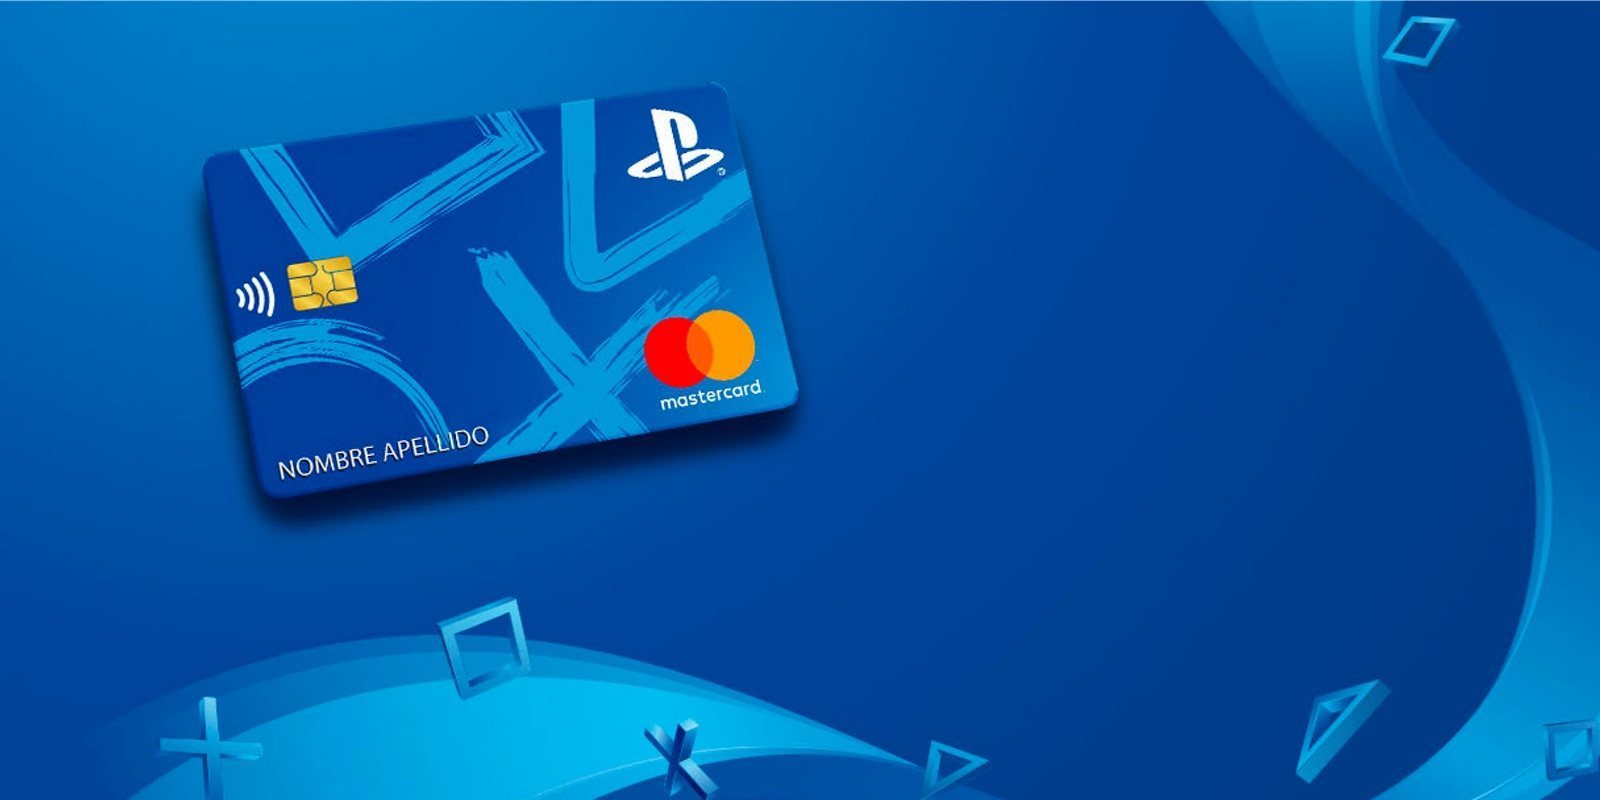 PlayStation lanza su tarjeta de débito con cashback para PS Store